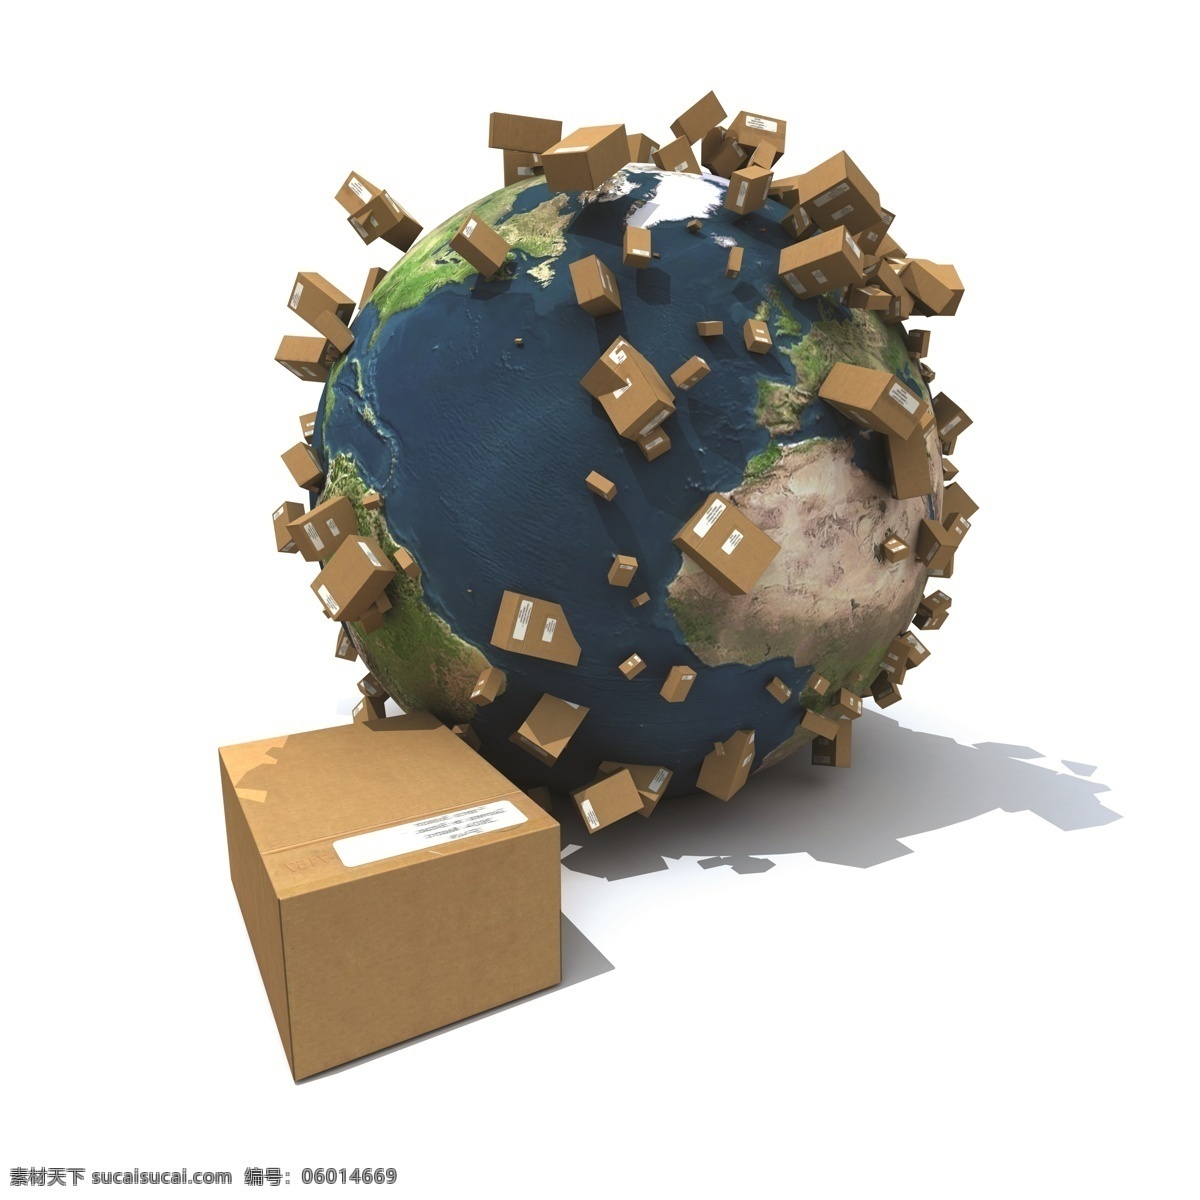 全球 物流运输 货运 物流 运输 货物运输 纸箱 箱子 地球 汽车图片 现代科技